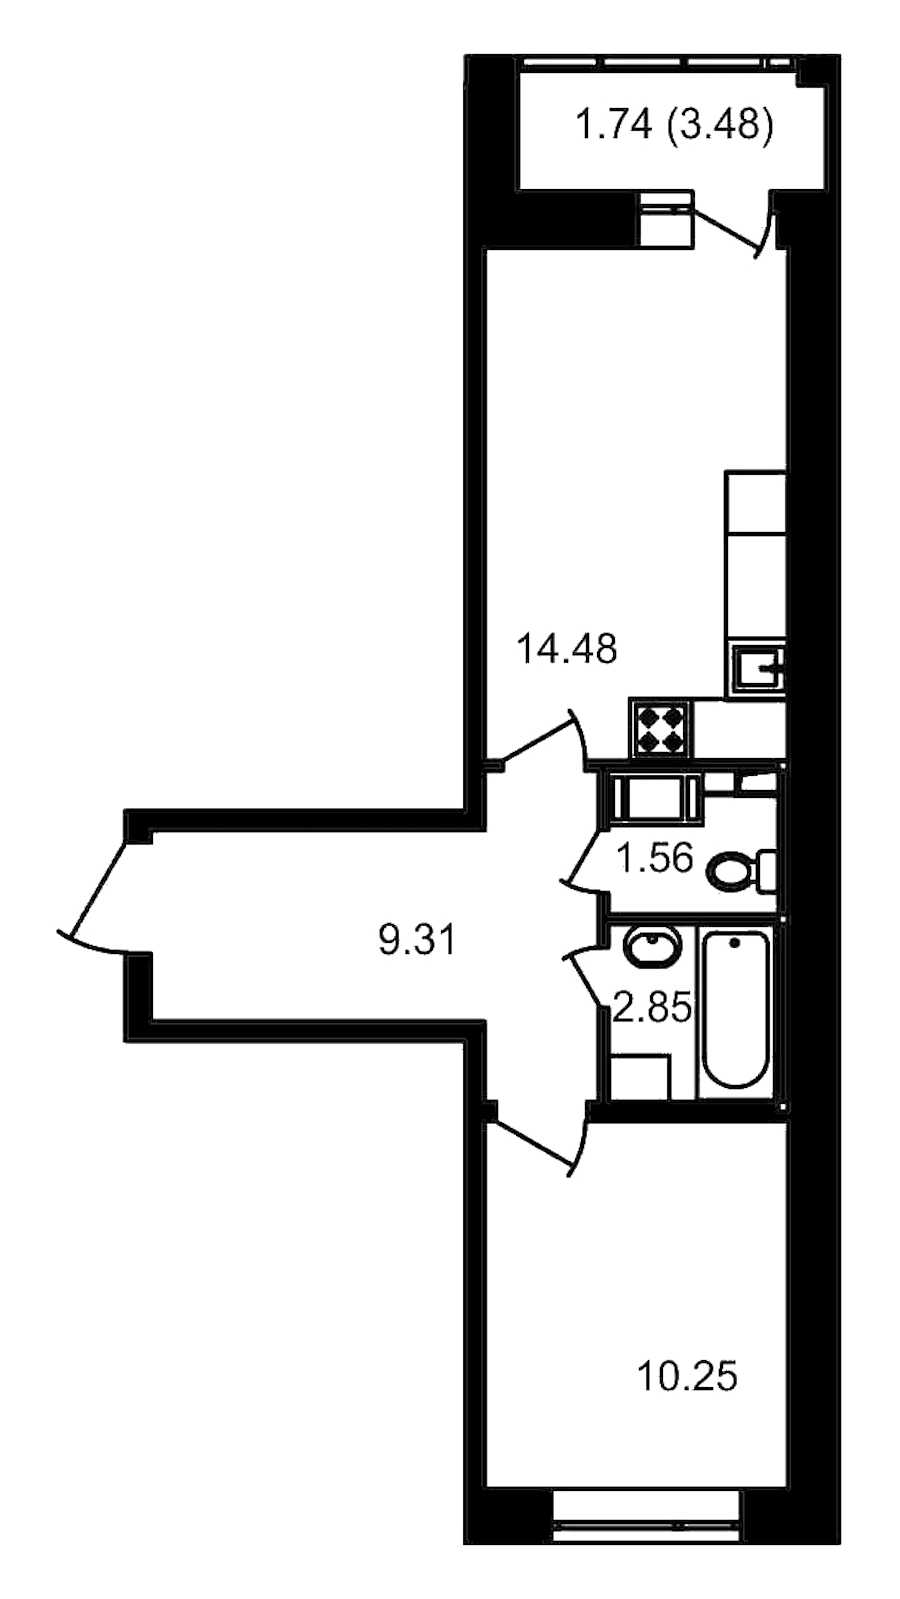 Однокомнатная квартира в ЦДС: площадь 41.93 м2 , этаж: 14 – купить в Санкт-Петербурге